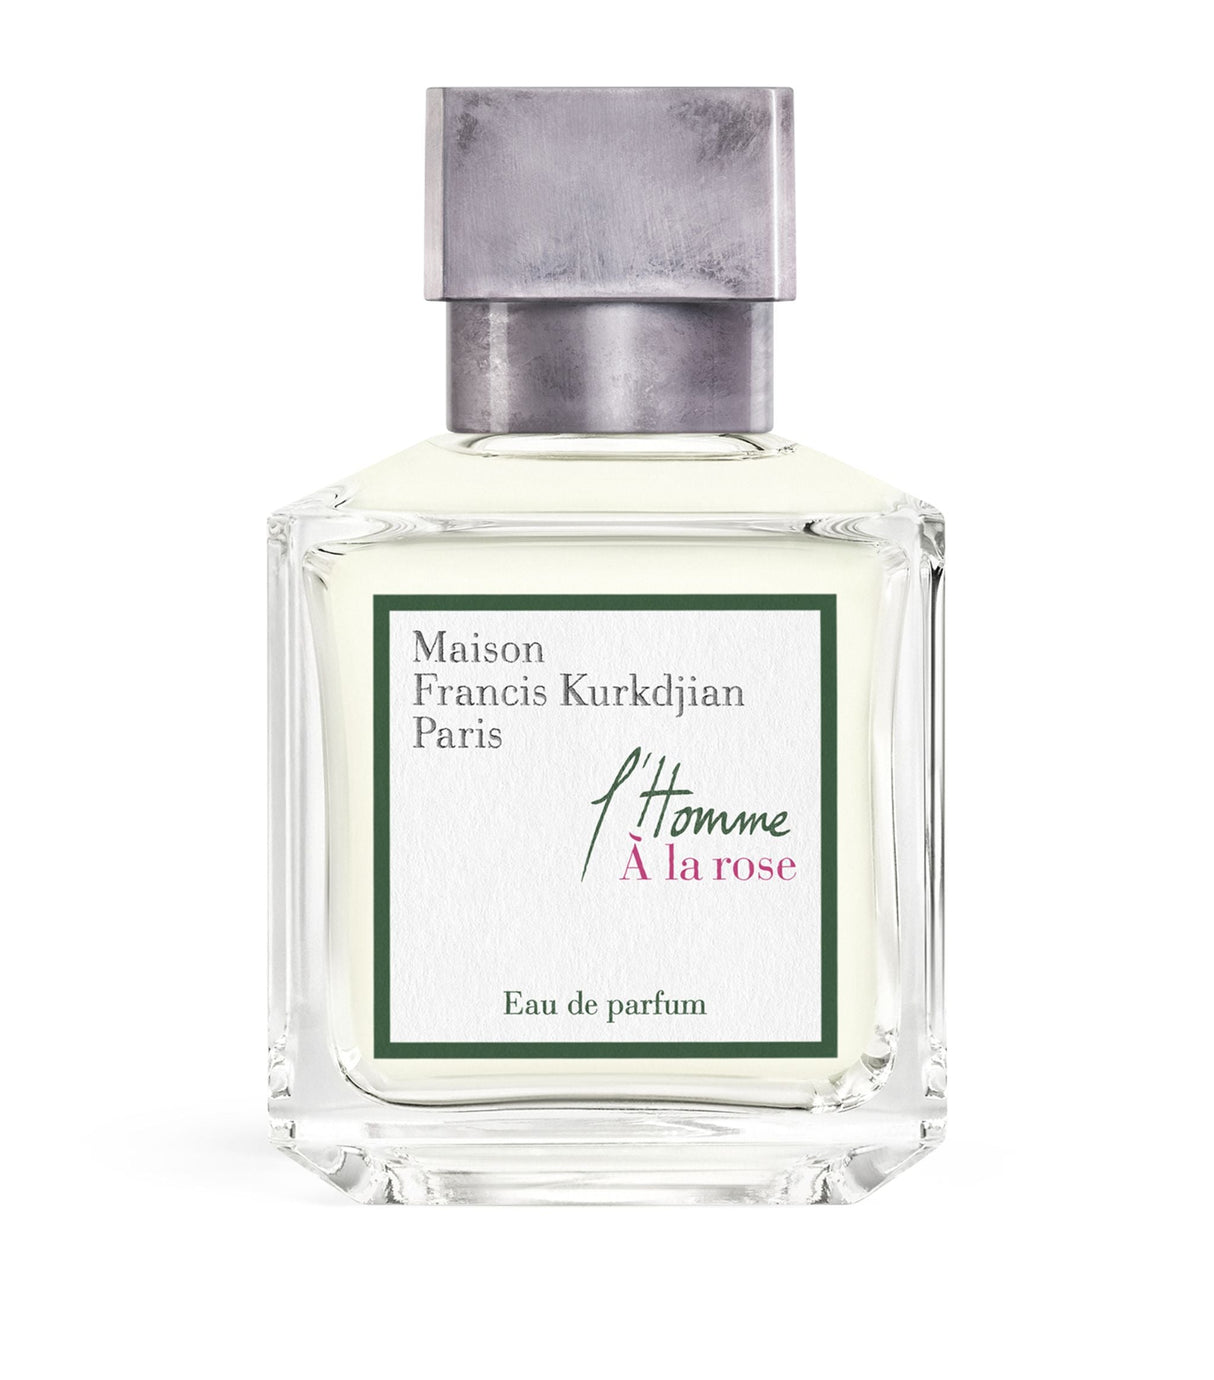 Maison Francis Kurkdjian L'Homme À la Rose Eau De Parfum